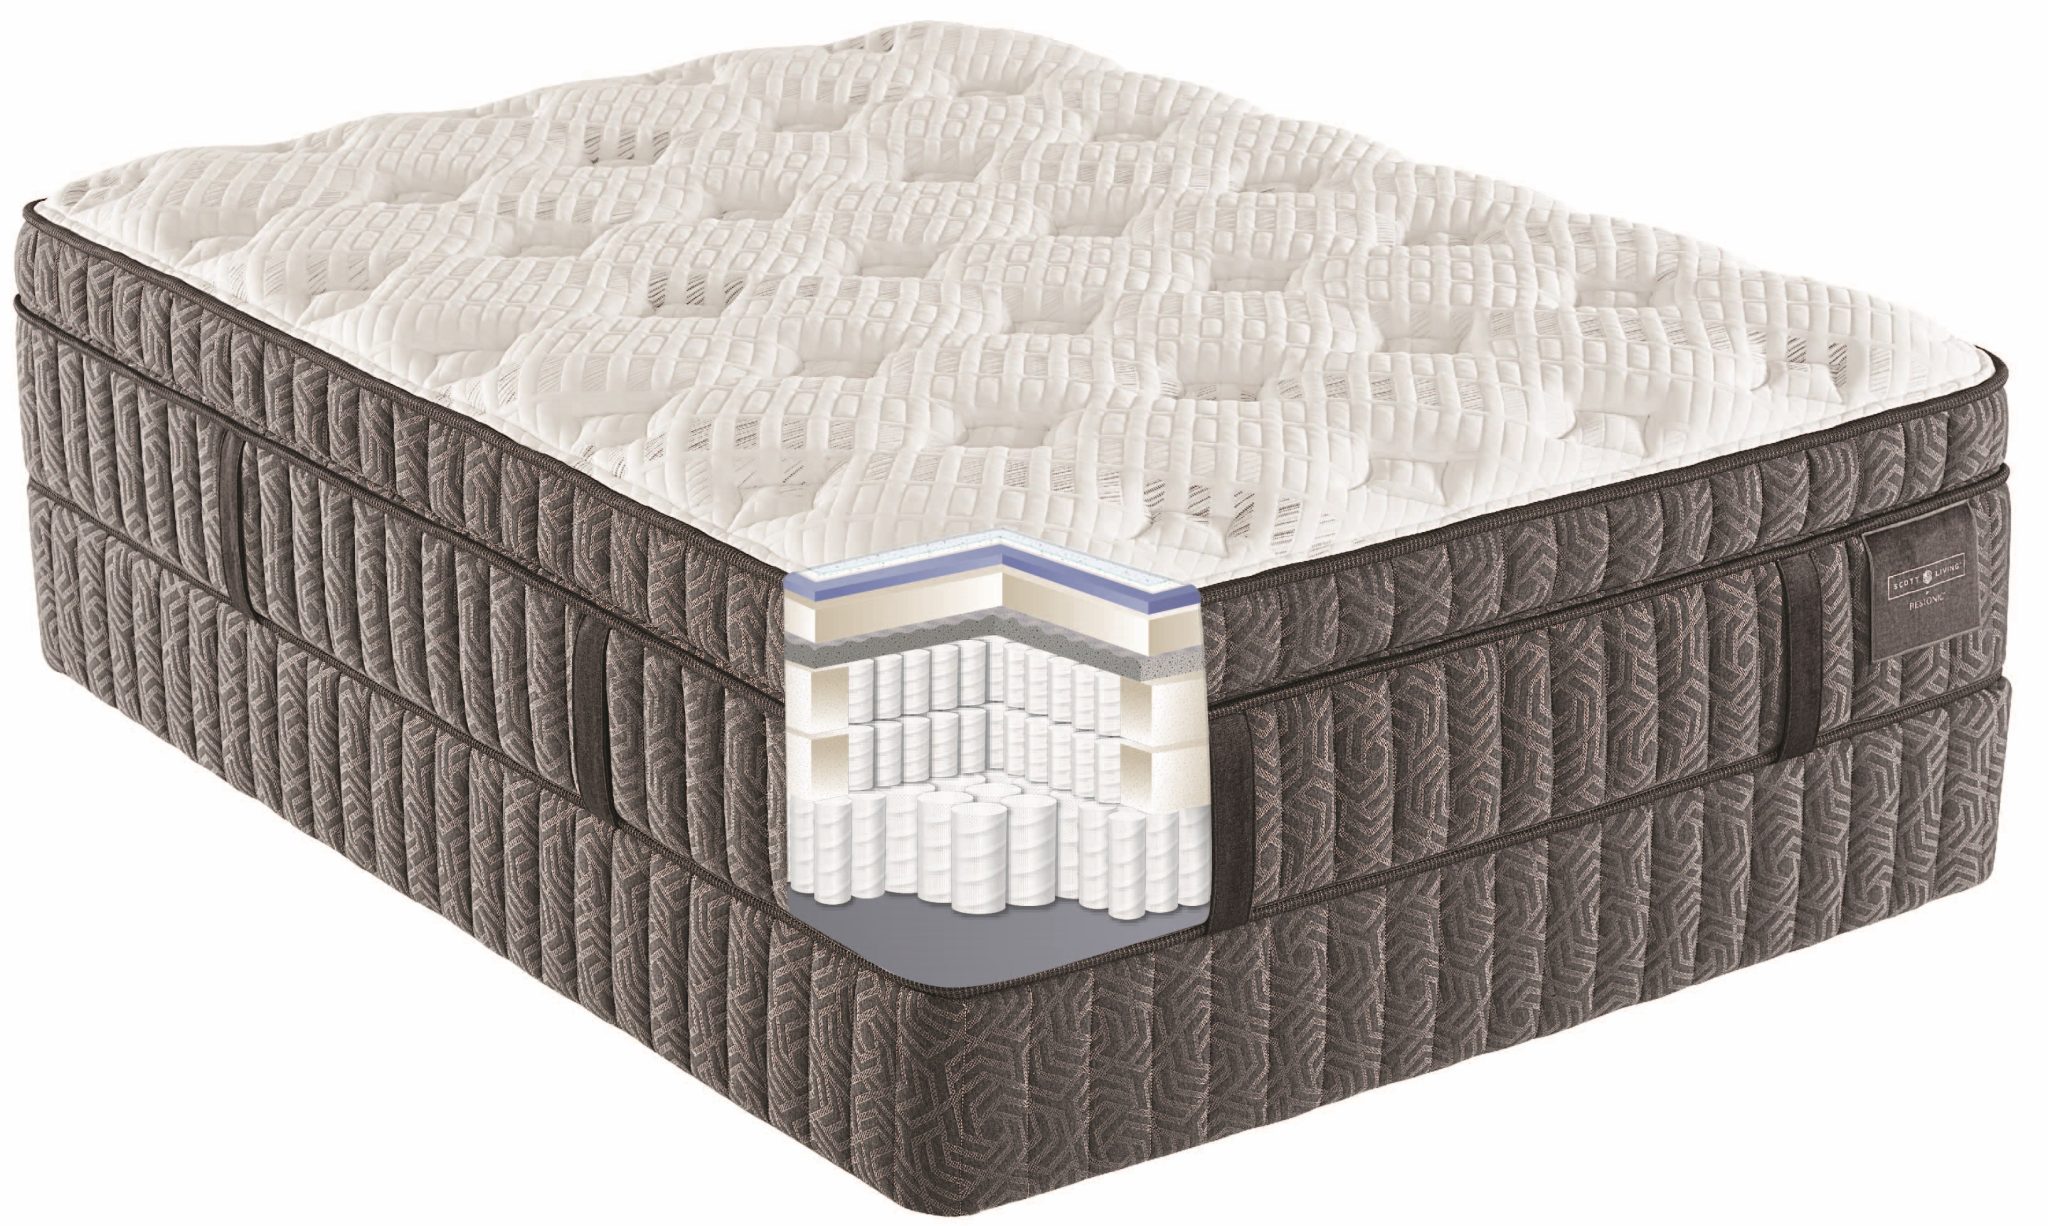 engineered latex mattress review